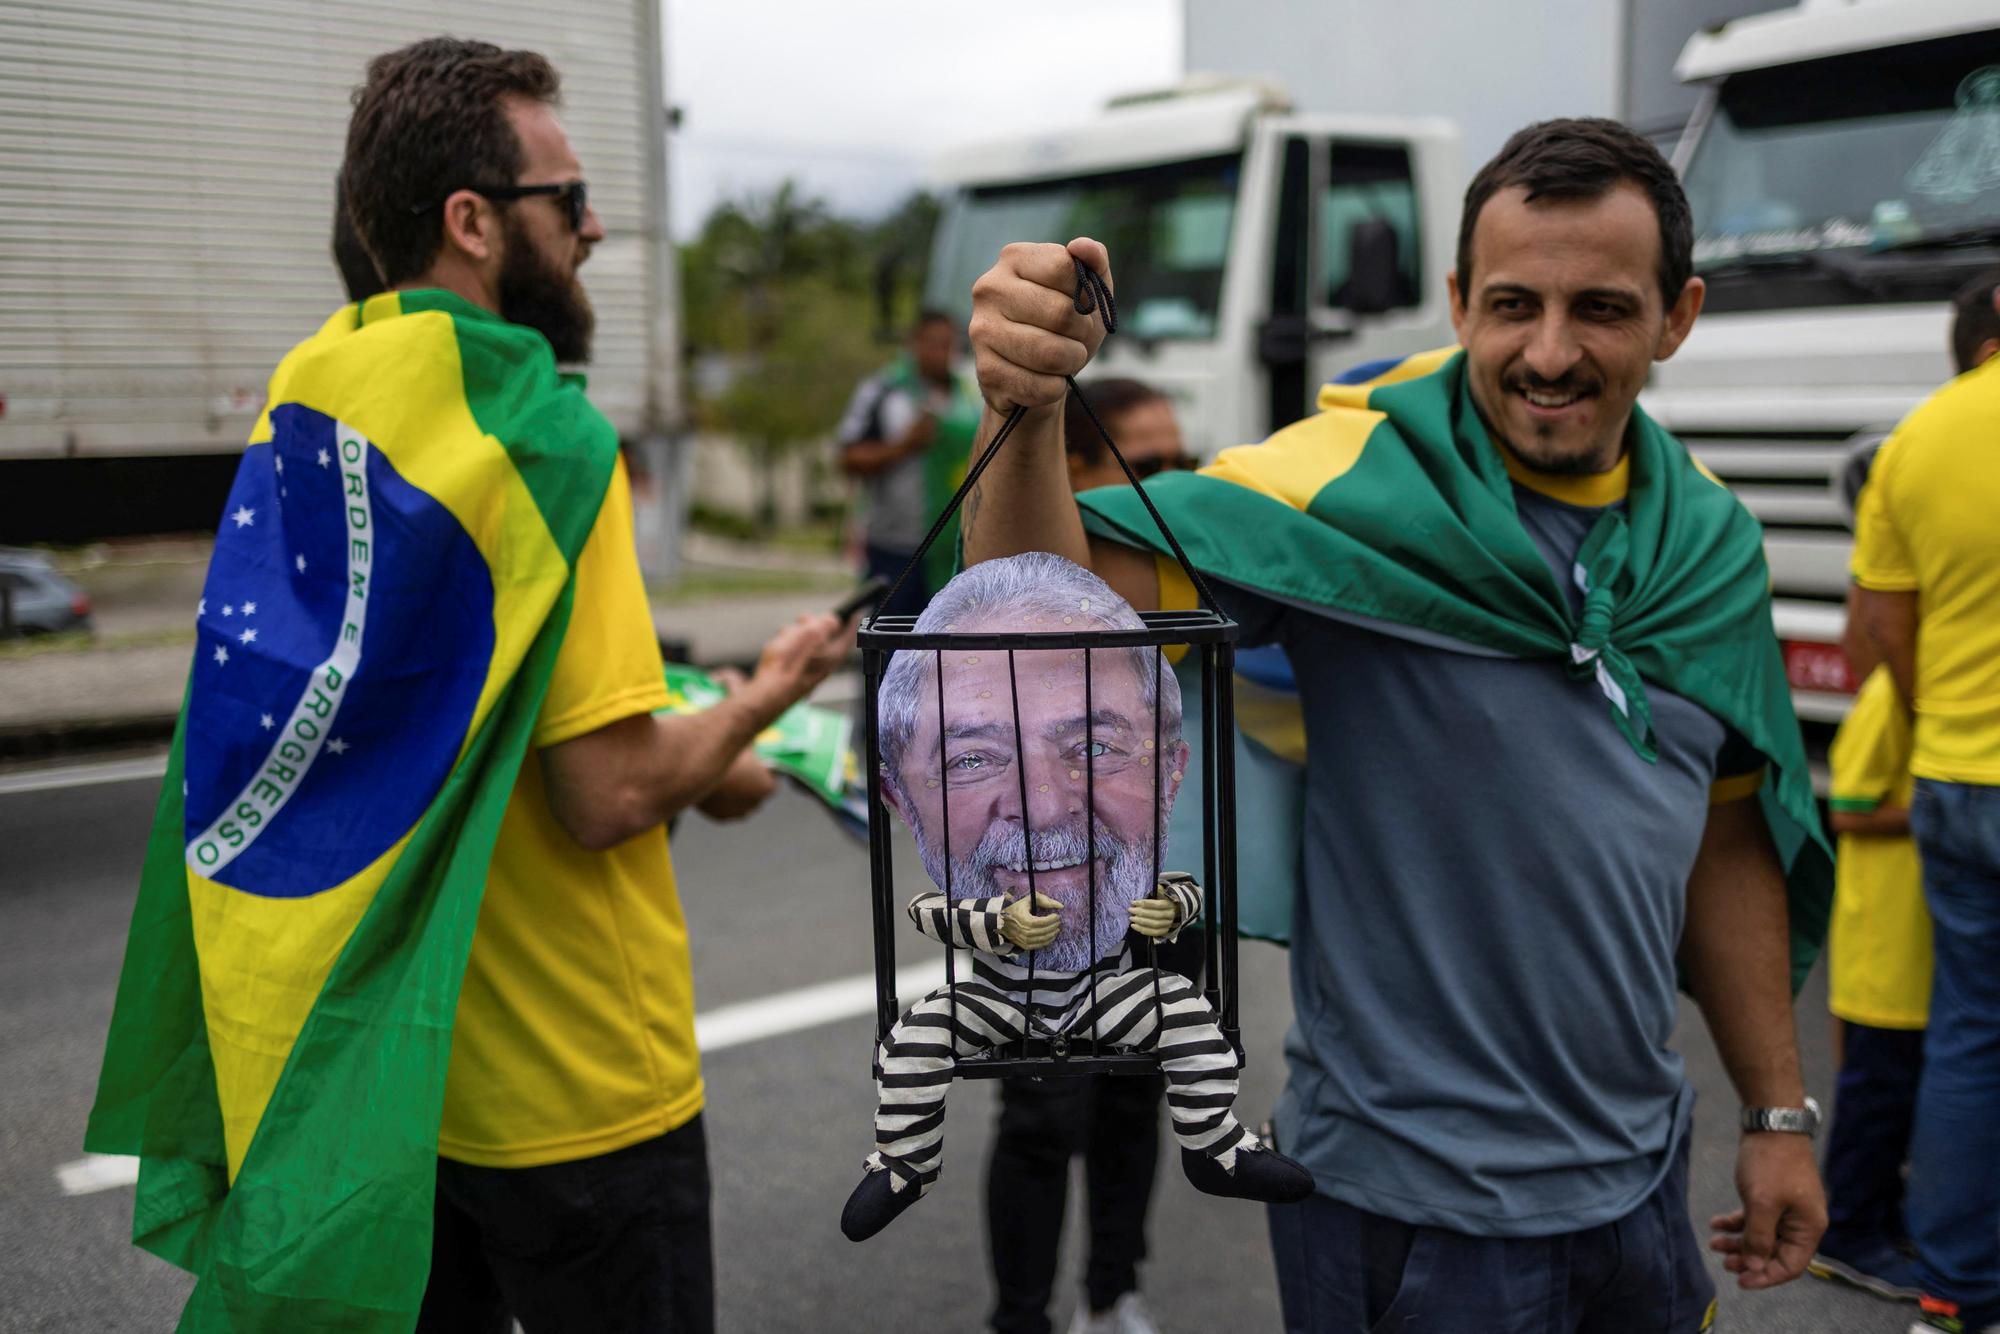 Des supporters de Jair Bolsonaro bloquent une route dans l'Etat de Sao Paulo. L'un d'eux tient une marionnette représentant le président élu Lula dans une cage. [REUTERS - Roosevelt Cassio]